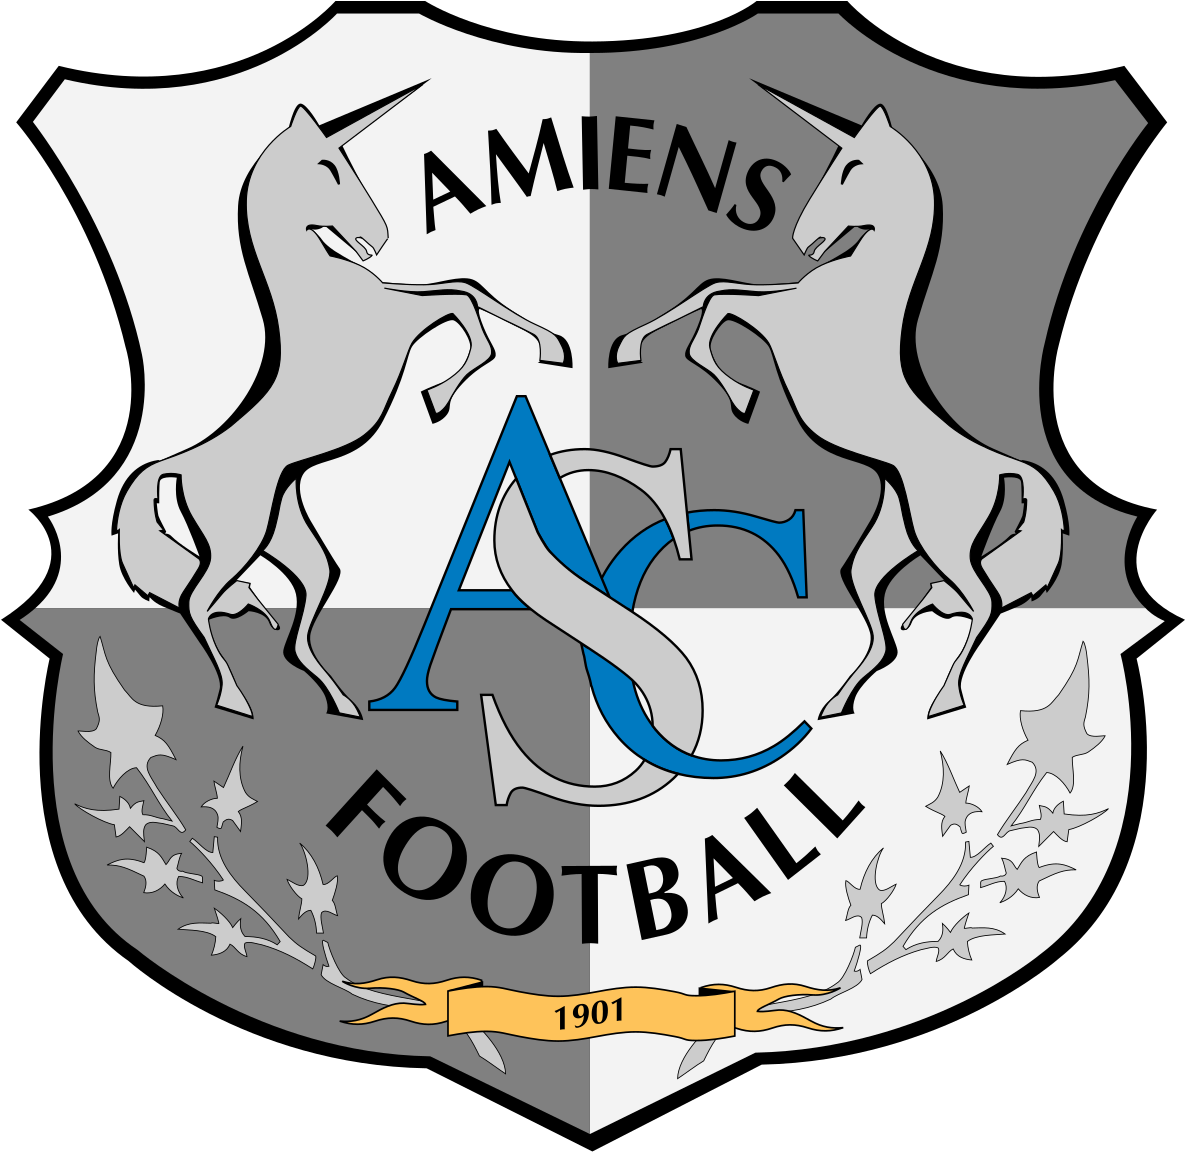 Ce Qu'il Faut Retenir - Amiens Foot (1200x1168)